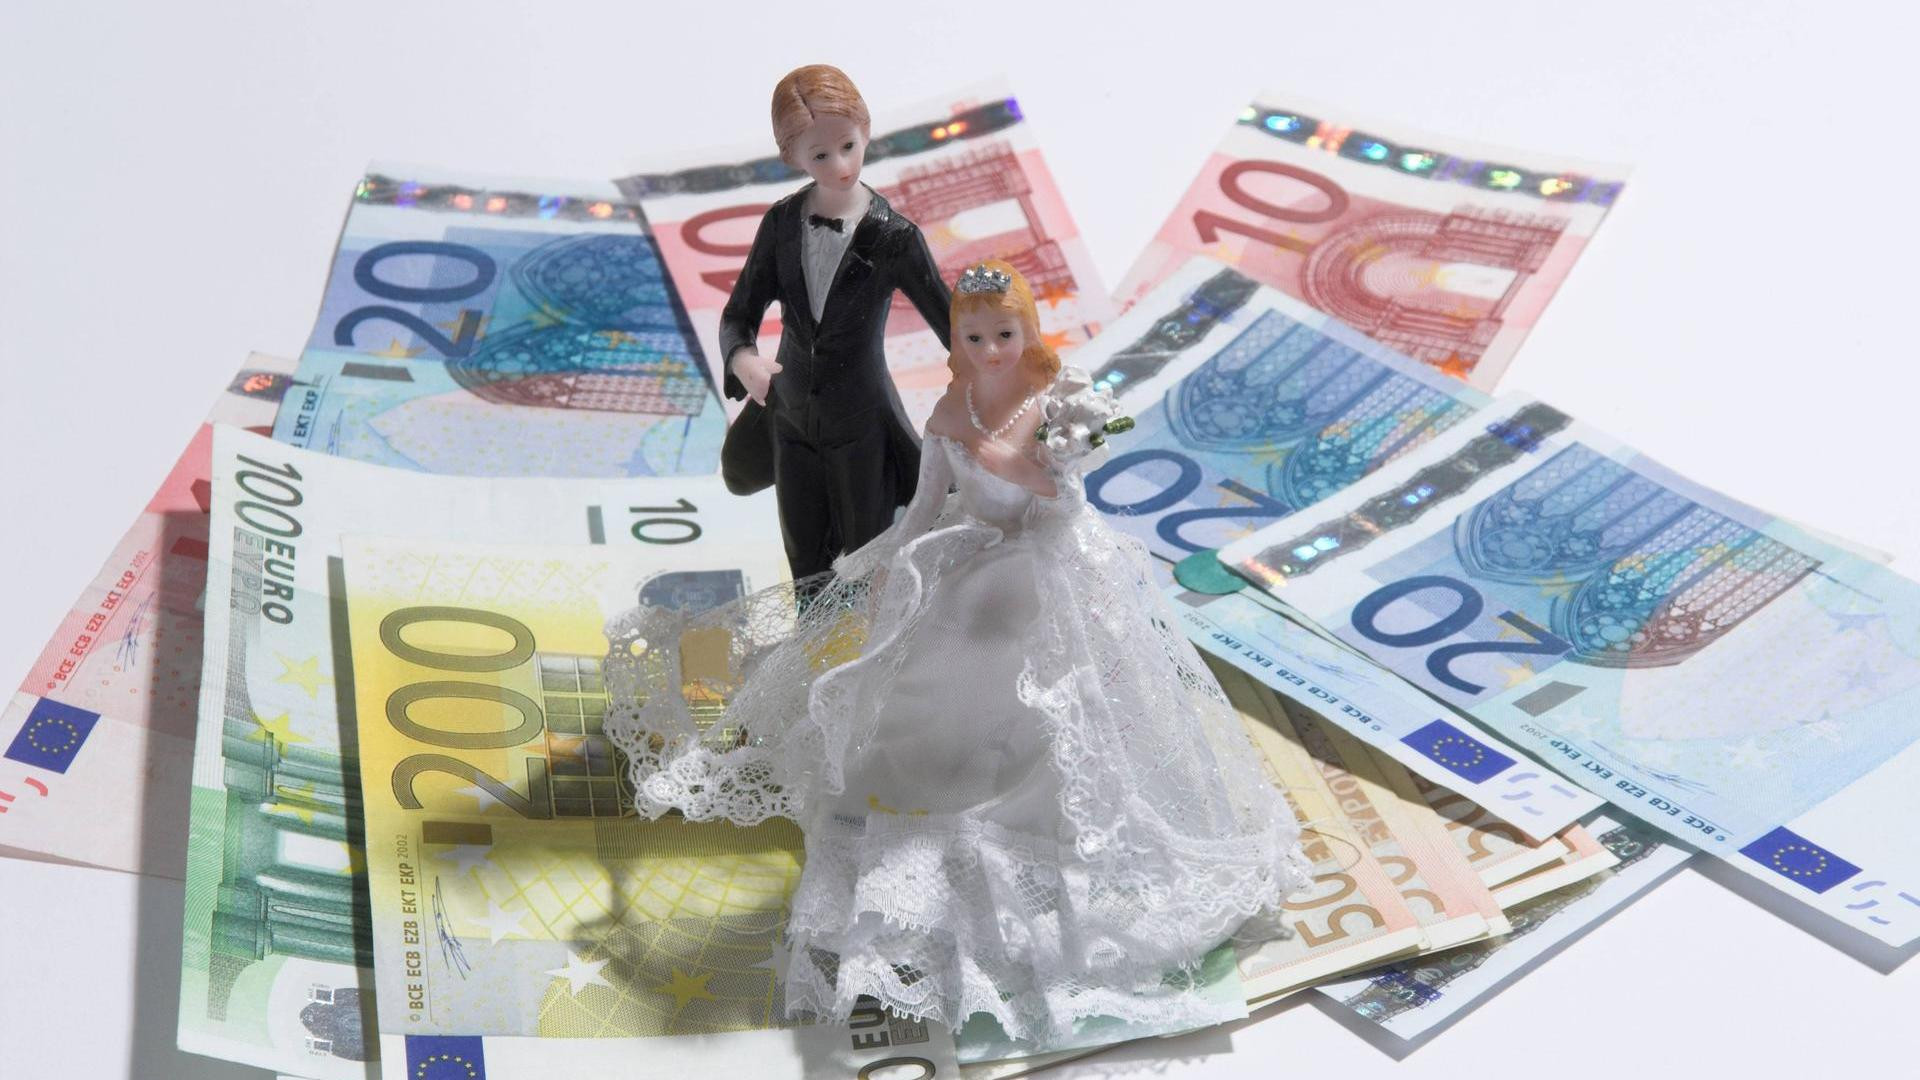 Geldgeschenke Ideen Hochzeit
 Geldgeschenke zur Hochzeit 5 kreative Ideen zum Verpacken